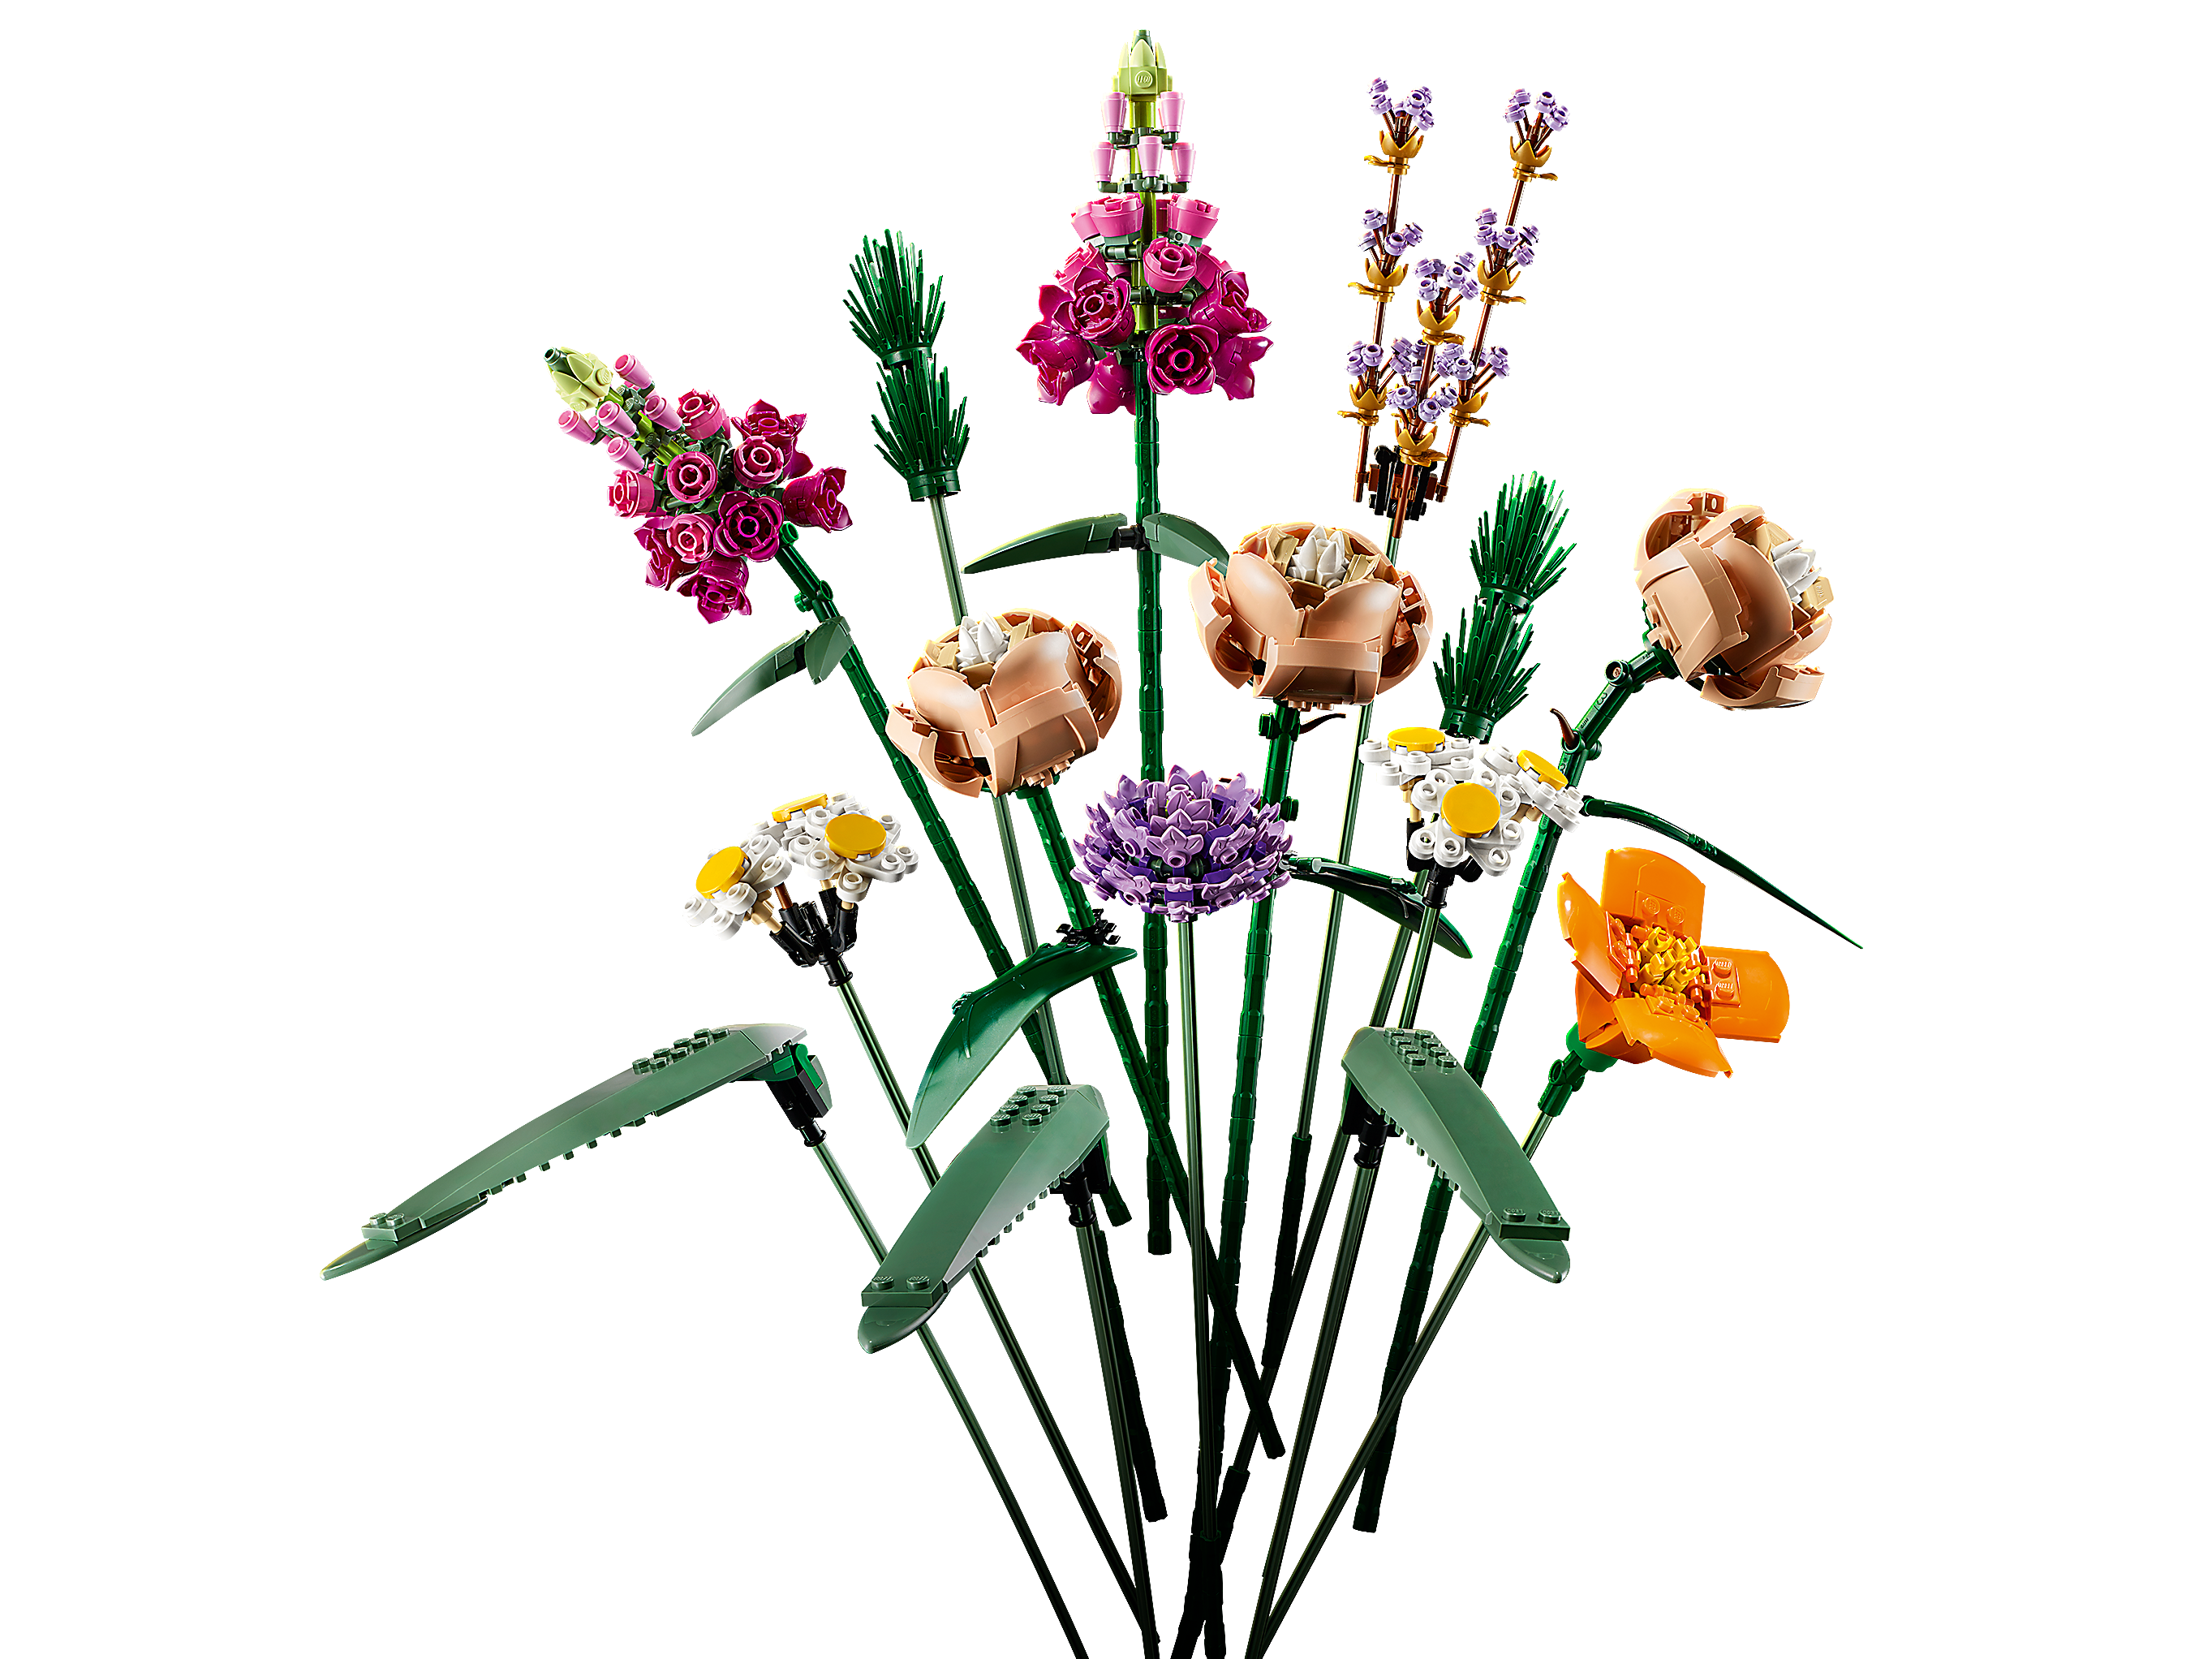 Botanik Kollektion LEGO 10280 Creator Expert Blumenstrauß Set für Erwachsene künstliche Blumen